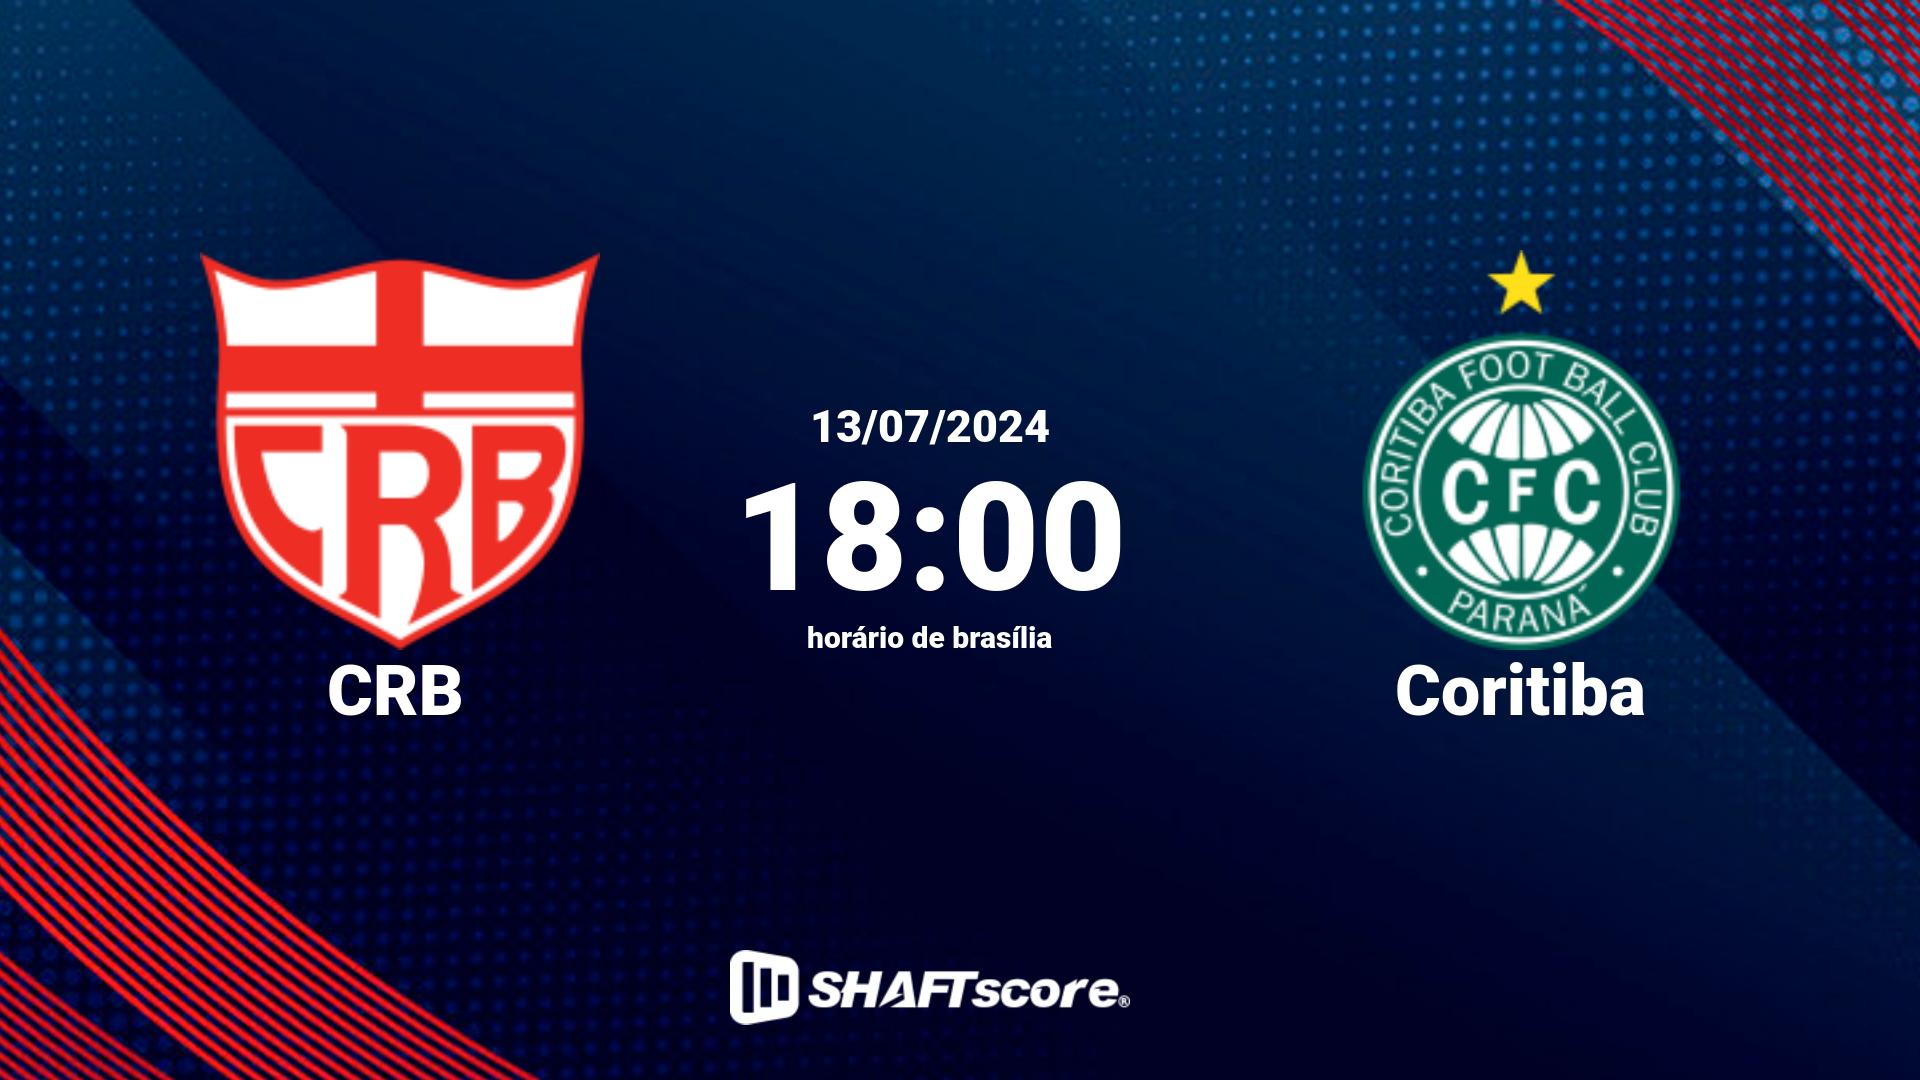 Estatísticas do jogo CRB vs Coritiba 13.07 18:00